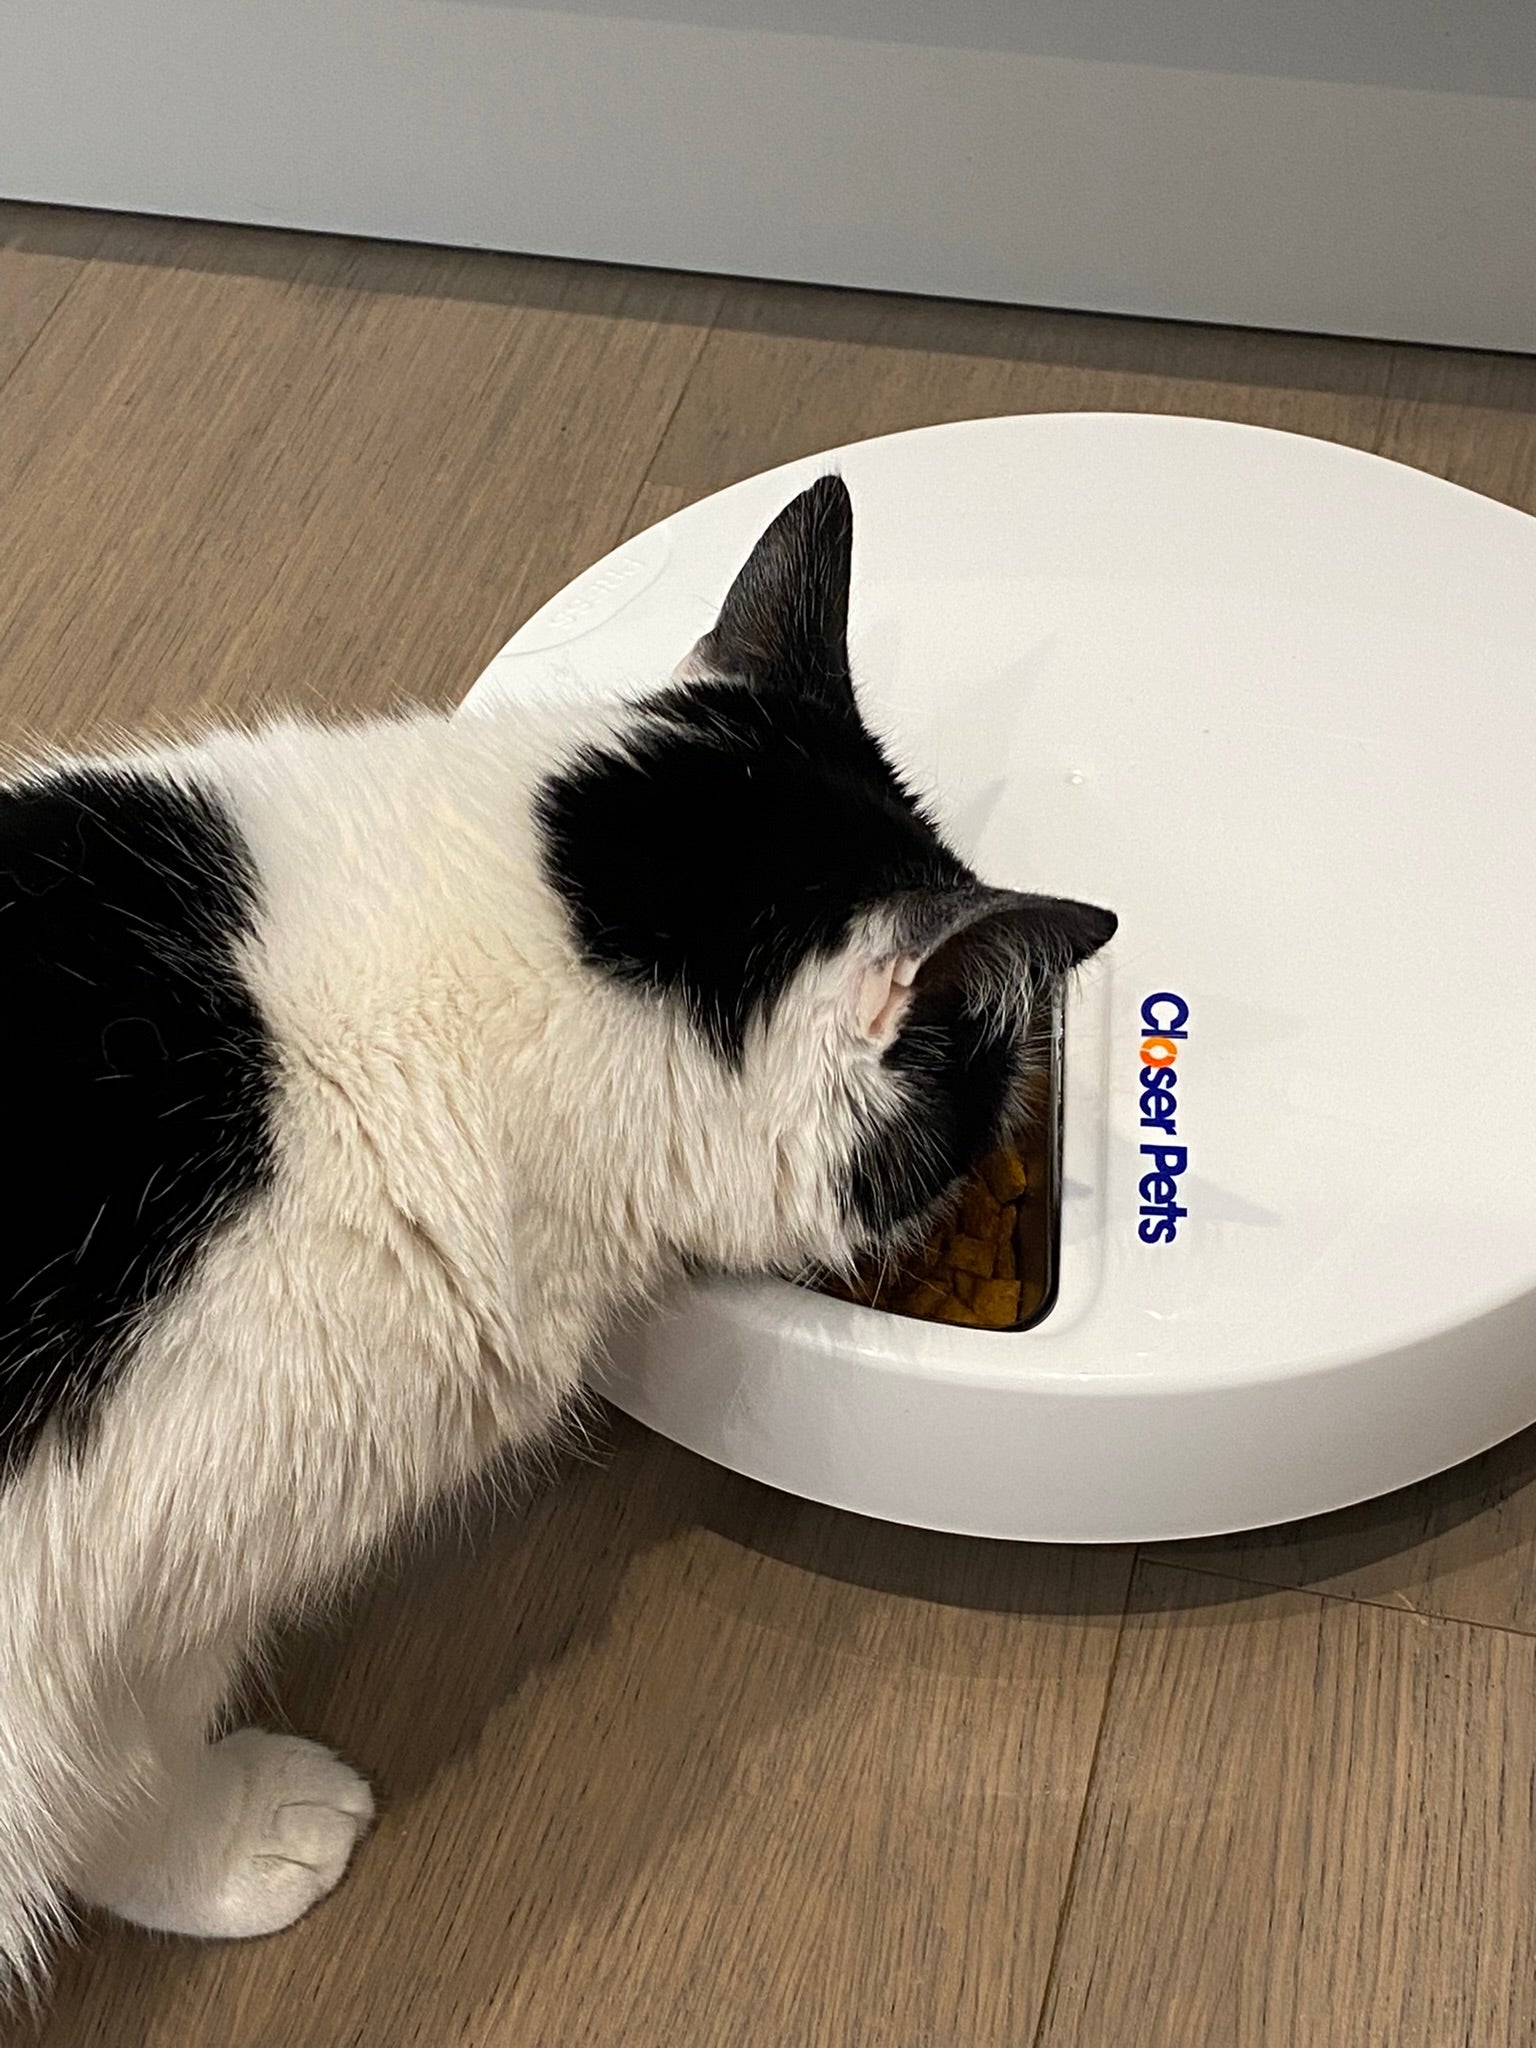 Cat Mate Lot de 5 Inserts en Acier Inoxydable pour mangeoire